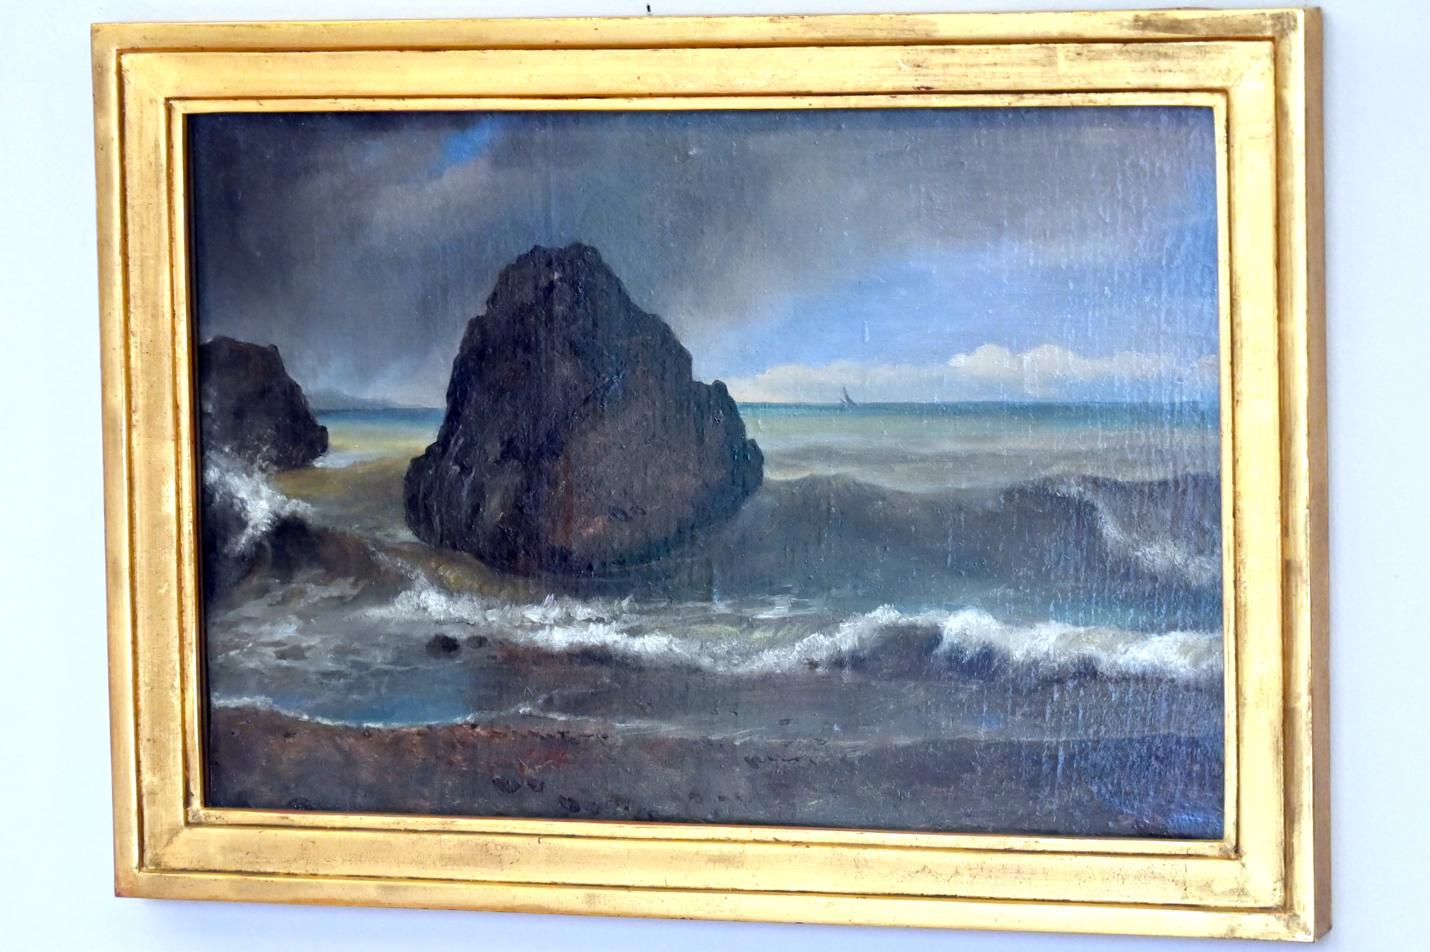 Achille Etna Michallon (1816–1822), Blick auf das Meer bei Salerno, Paris, Musée du Louvre, Saal 948, 1820